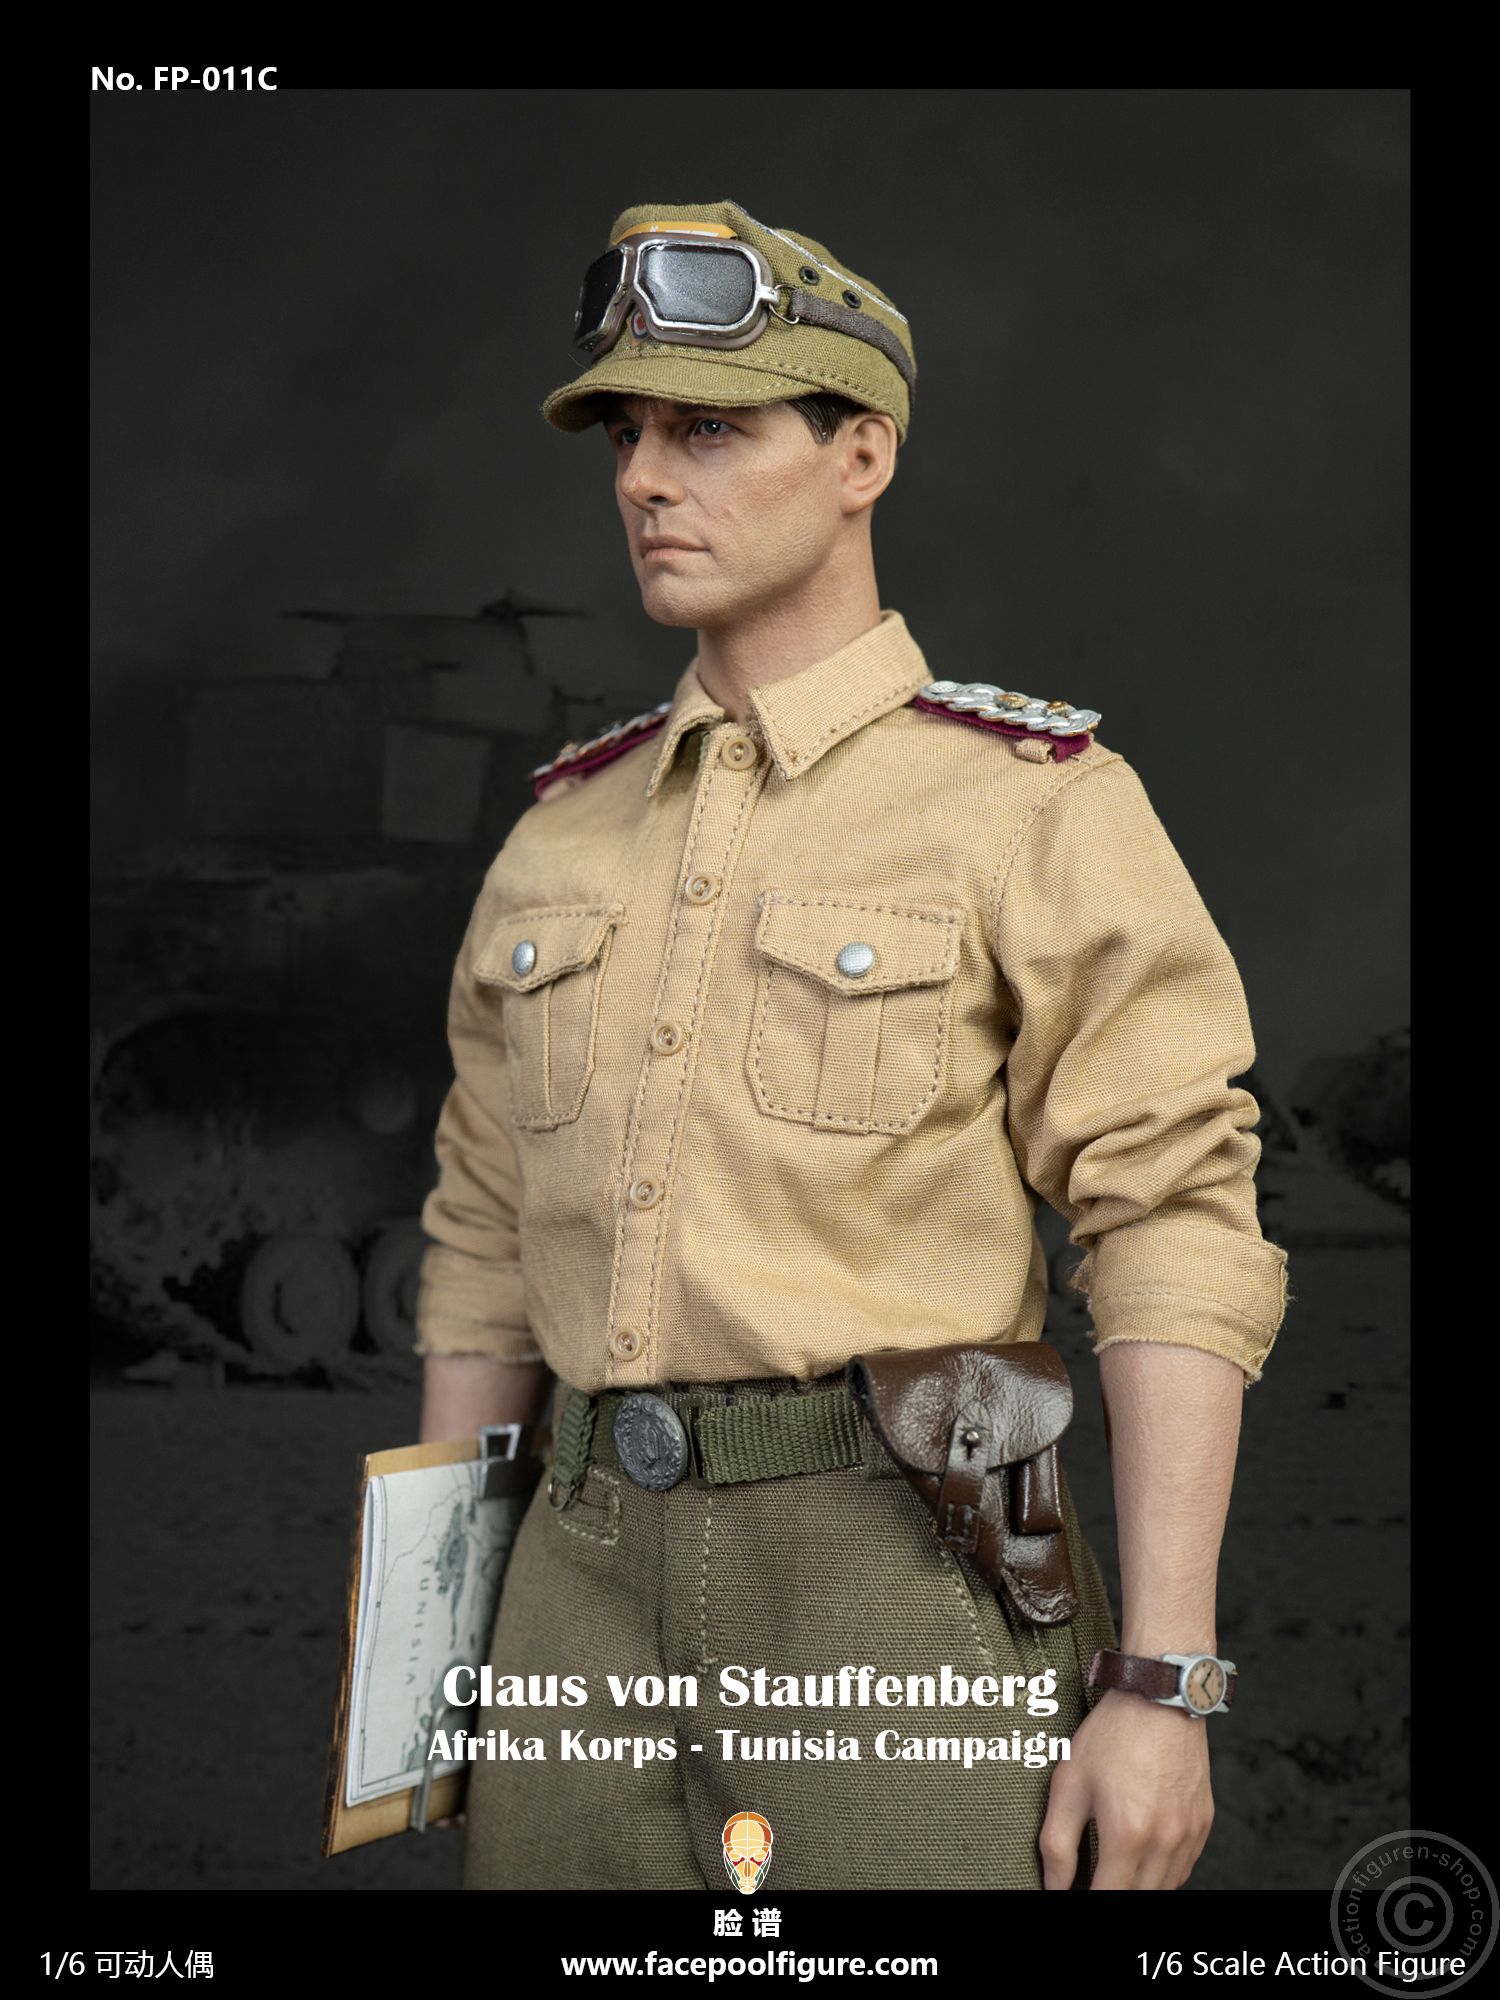 Claus Schenk Graf von Stauffenberg - Afrika Korps